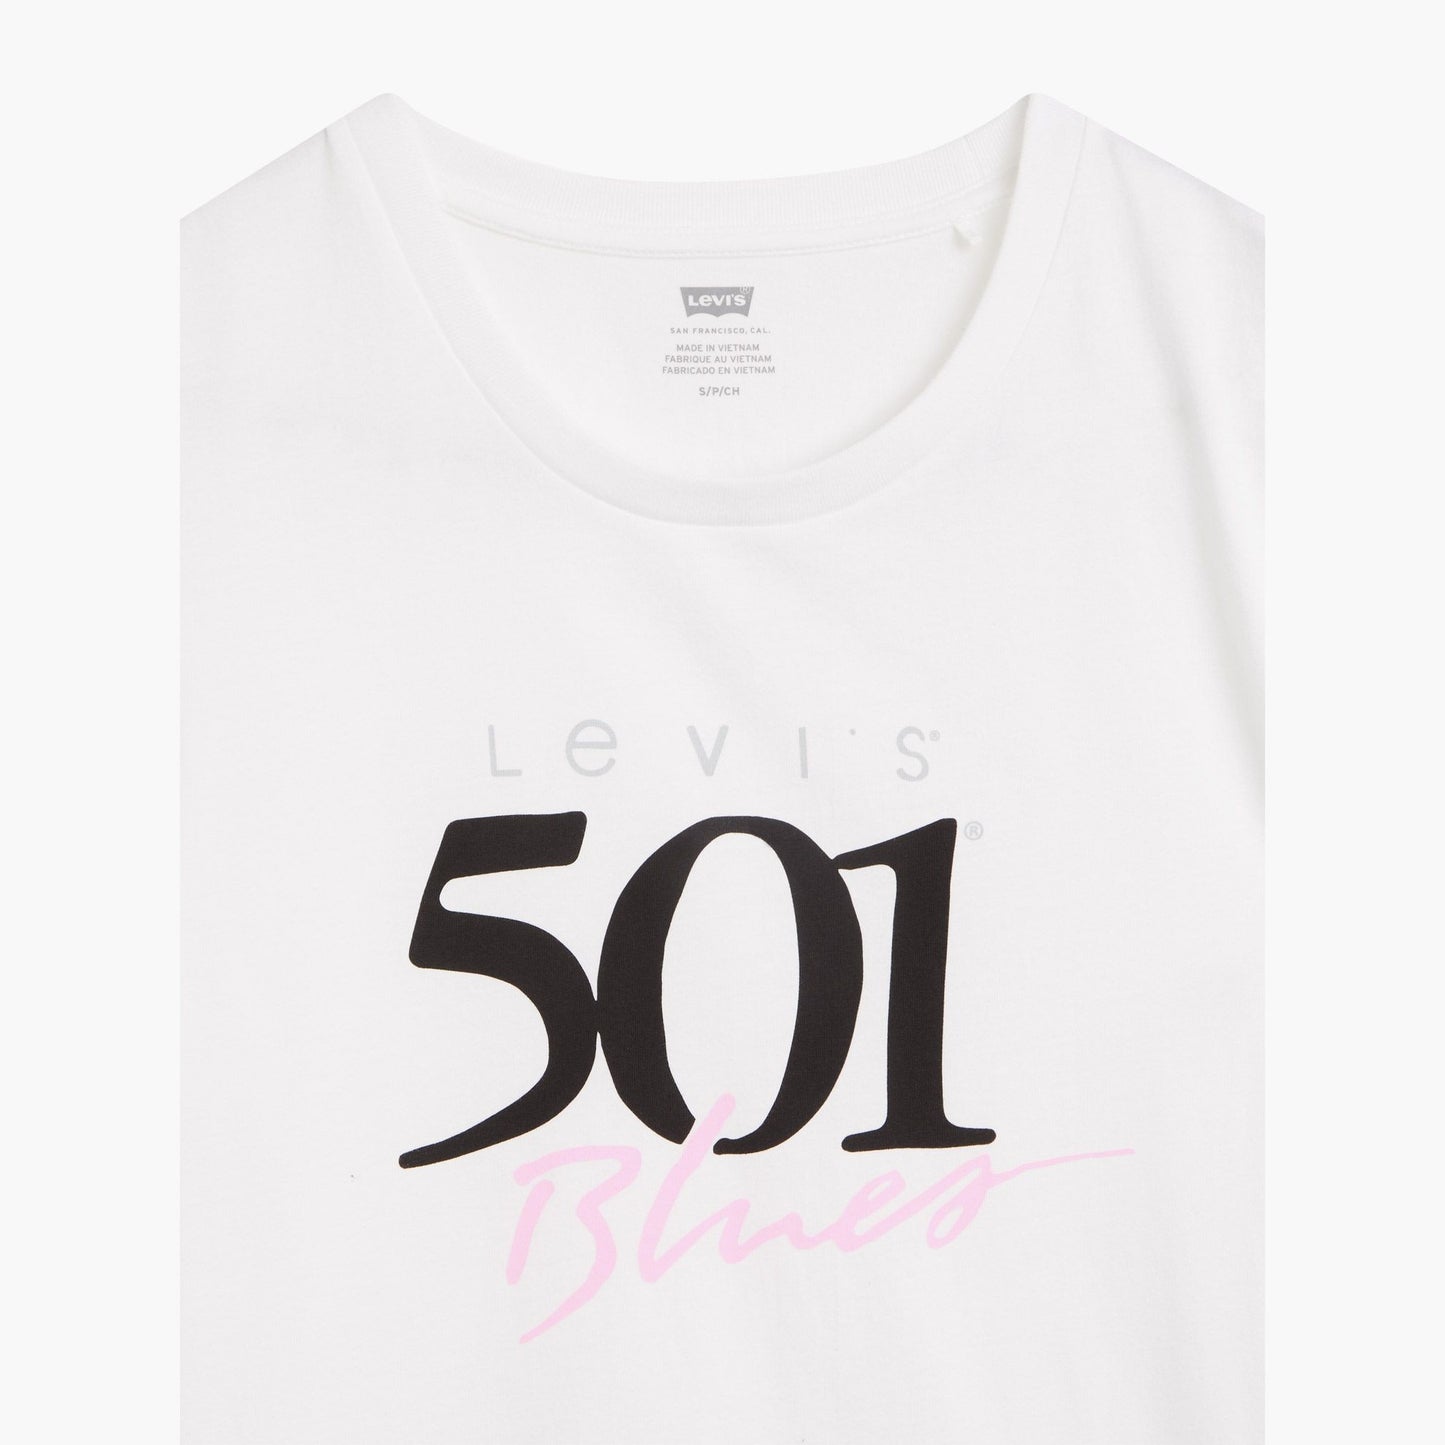 Levi's 501 Blues T-Shirt White